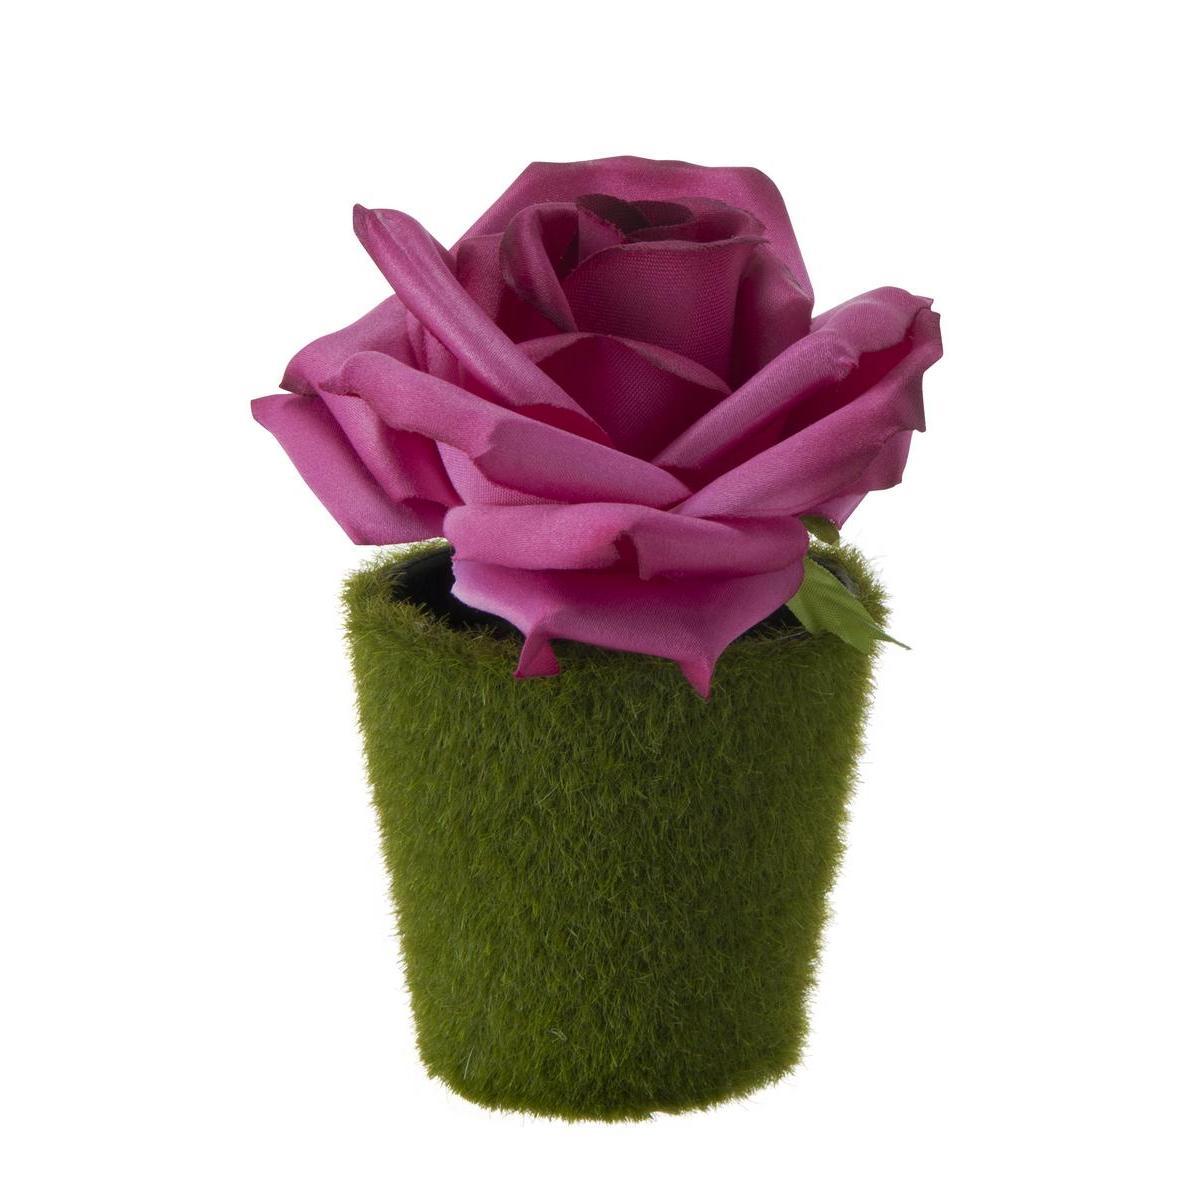 Rose effet satin en pot - Plastique - H 13 cm - Différents coloris